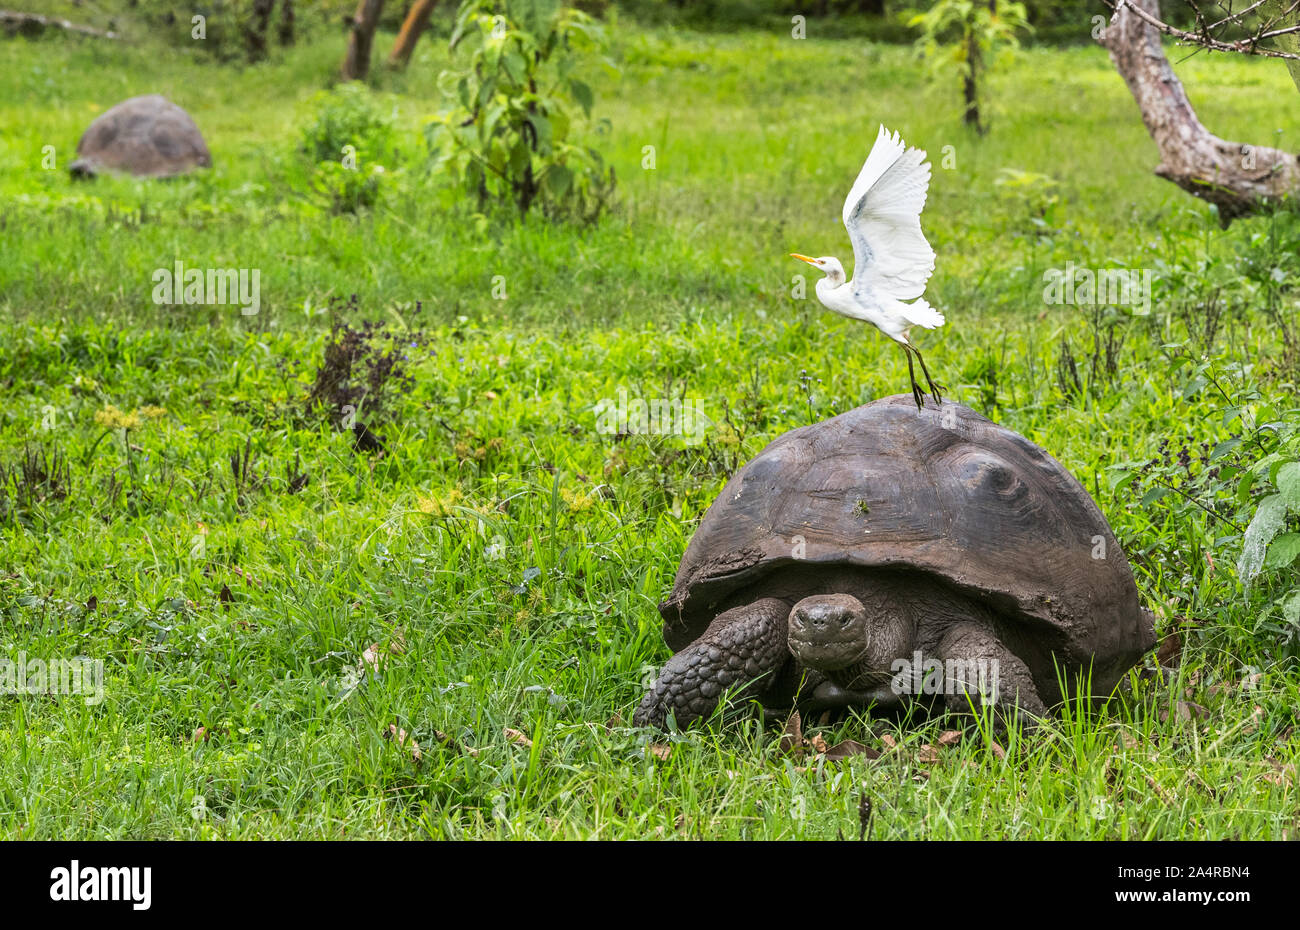 Les animaux. Tortue géante des Galapagos avec aigrette oiseau, sur l'île Santa Cruz en Iles Galapagos. Les animaux, la nature et la faune close up de tortue dans les hautes terres de Galapagos, Equateur, Amérique du Sud. Banque D'Images